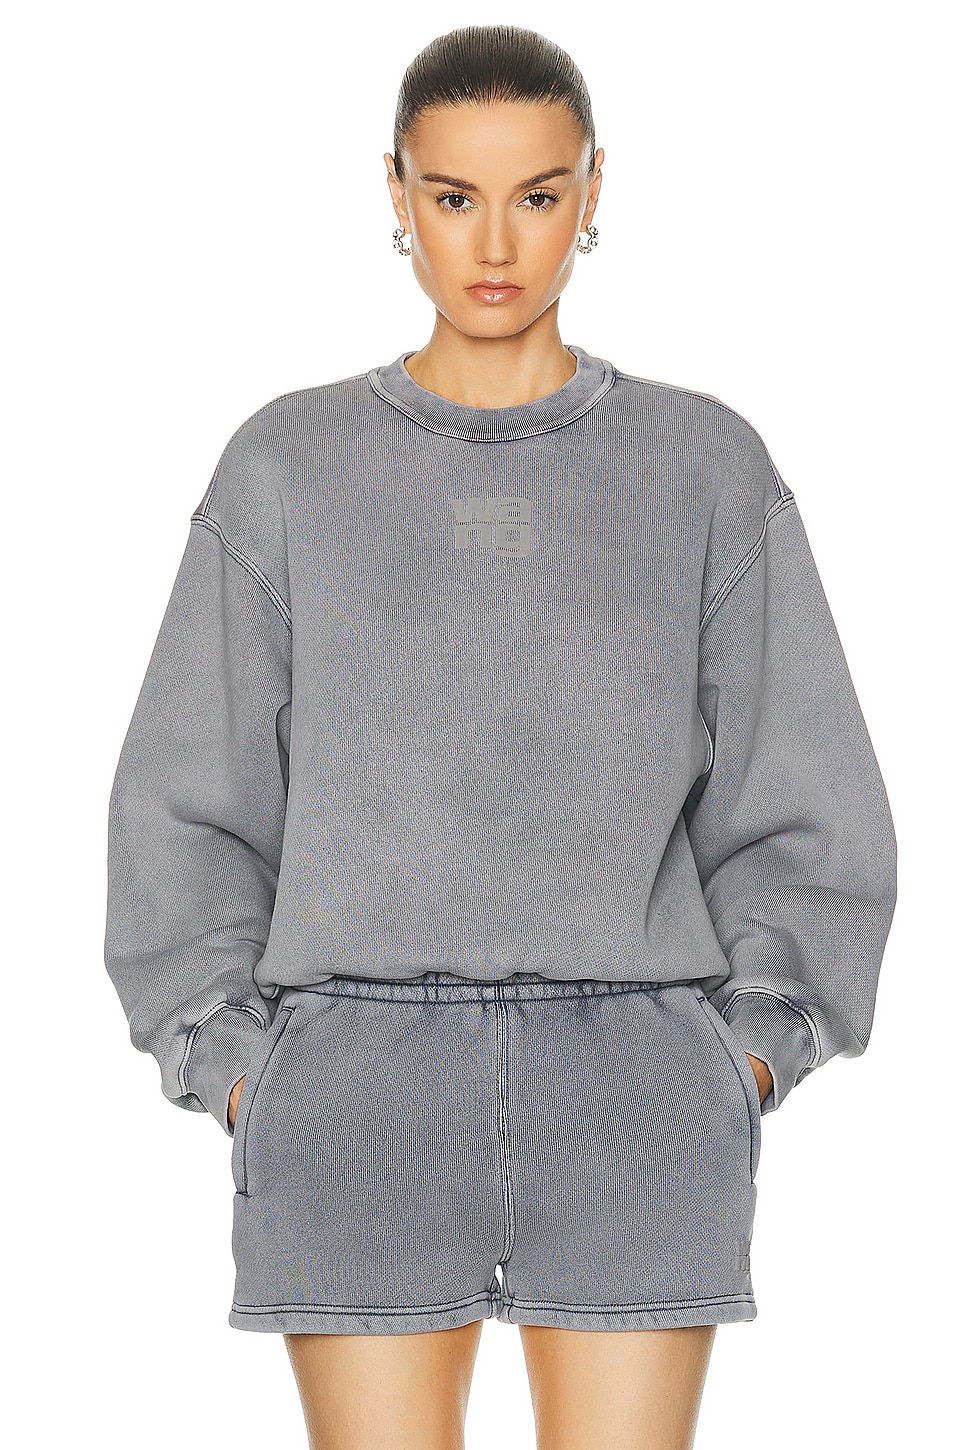 Alexander Wang Essential Terry Crew Sweatshirt in Grey